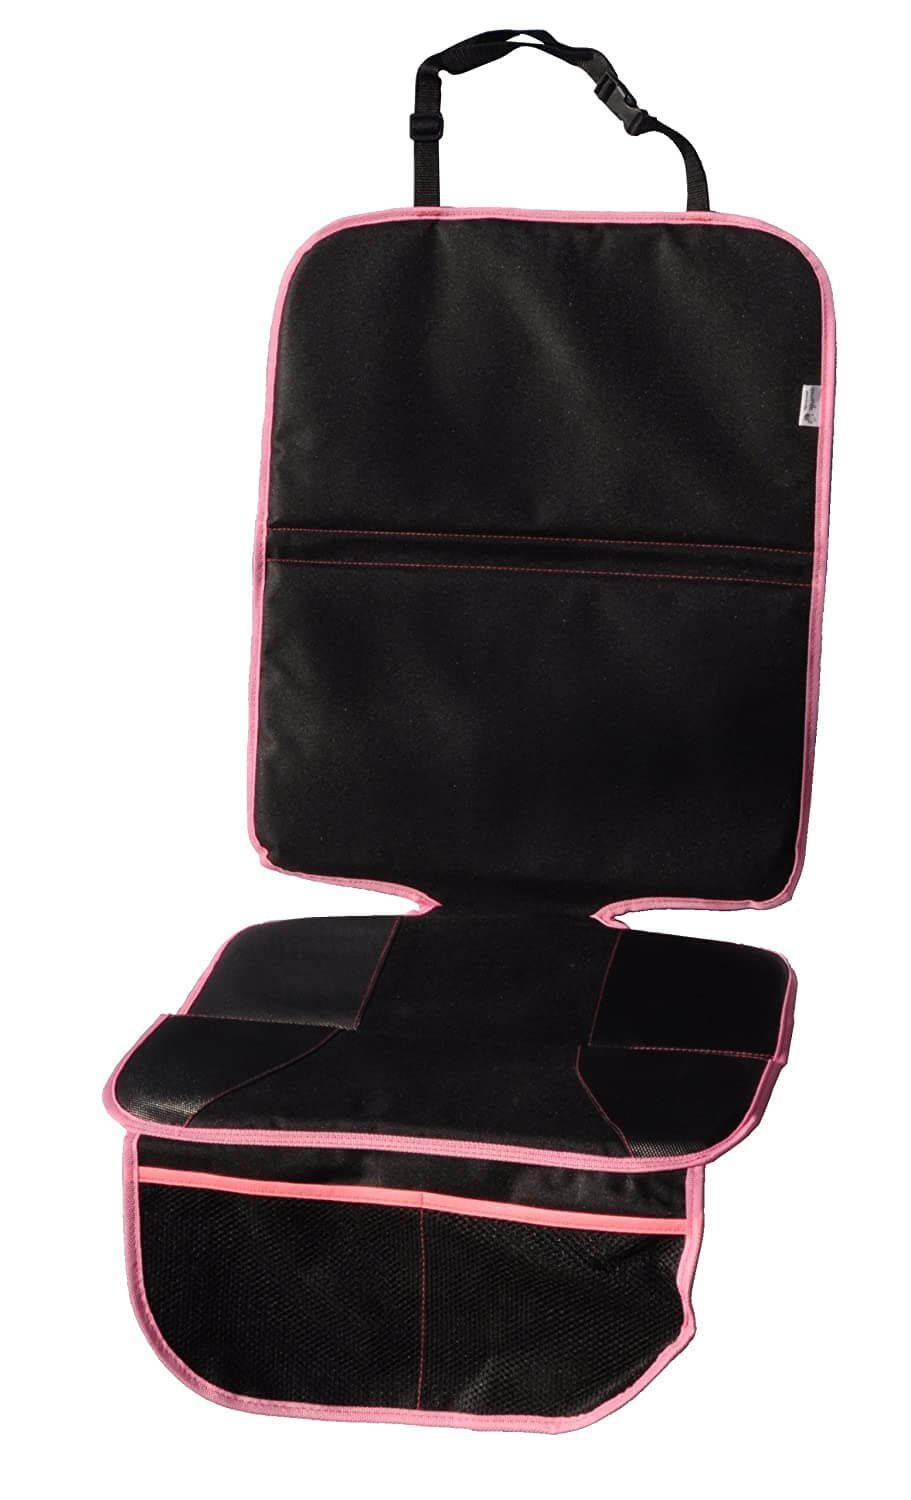 Sitzschutz Sitzschoner, Wasserabweisend Pink Sitzbezug säubern Kindersitzunterlage zu Wumbi Autokindersitz leicht